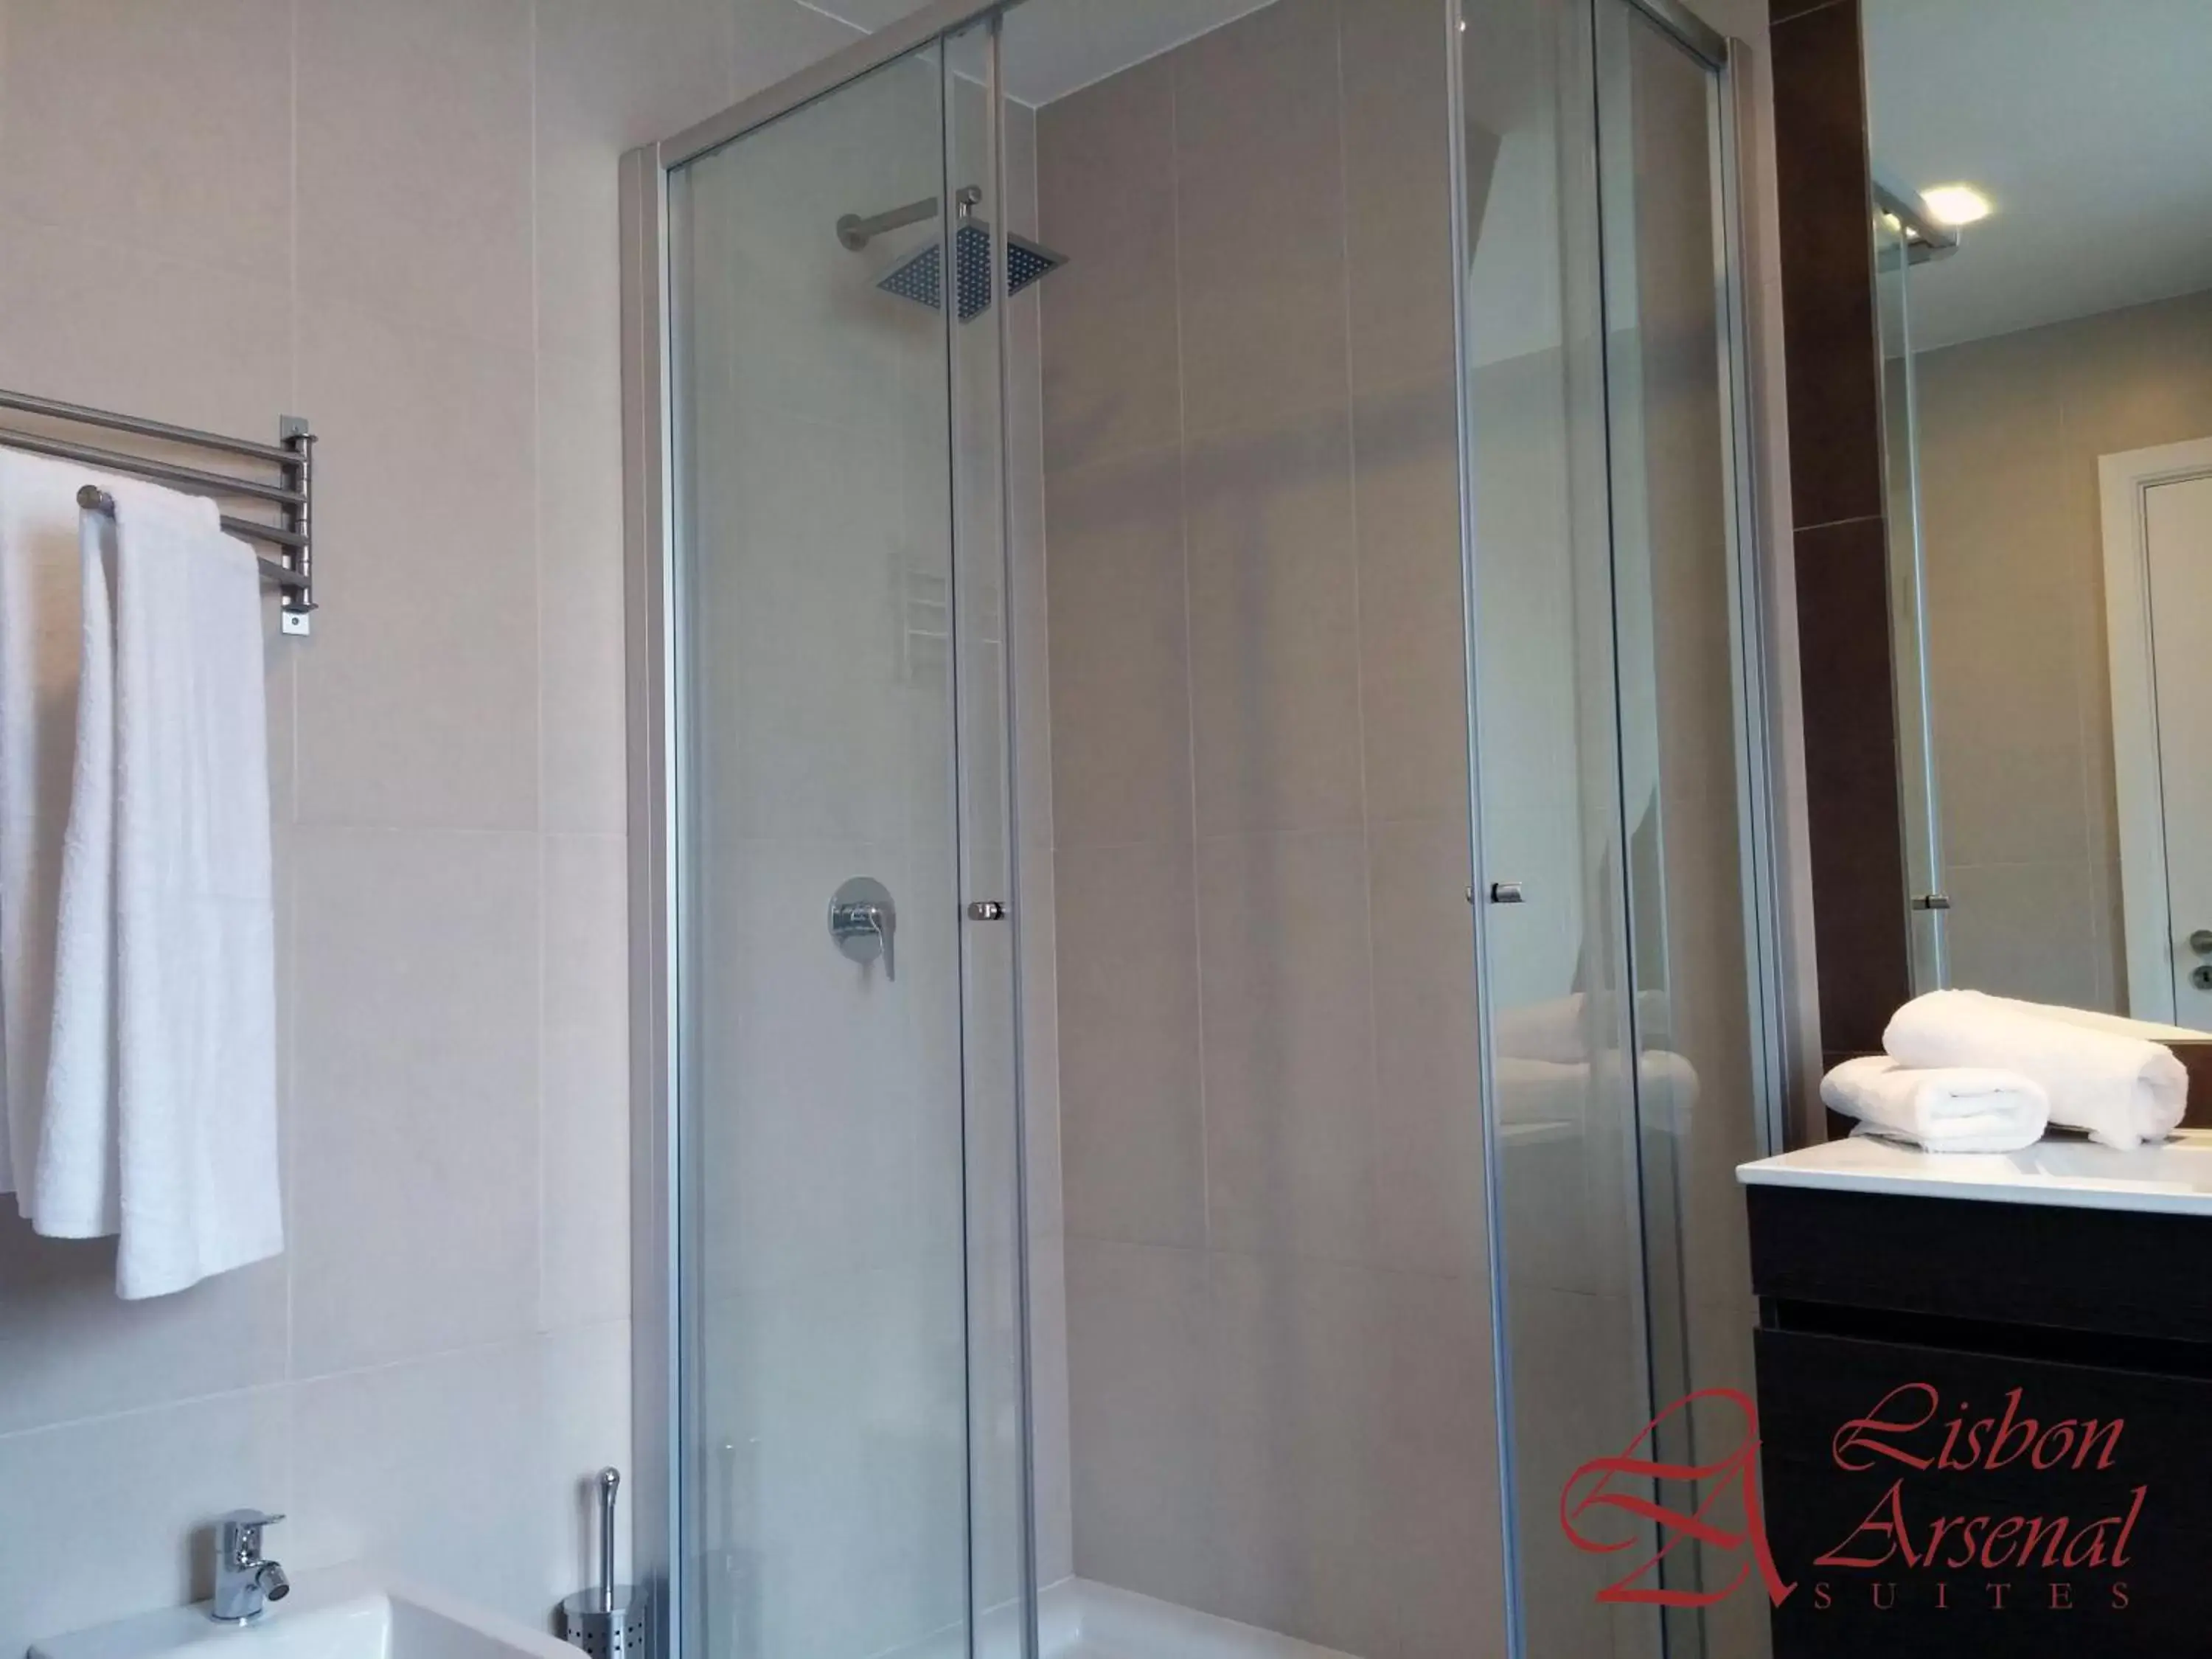 Shower, Bathroom in Lisbon Arsenal Suites